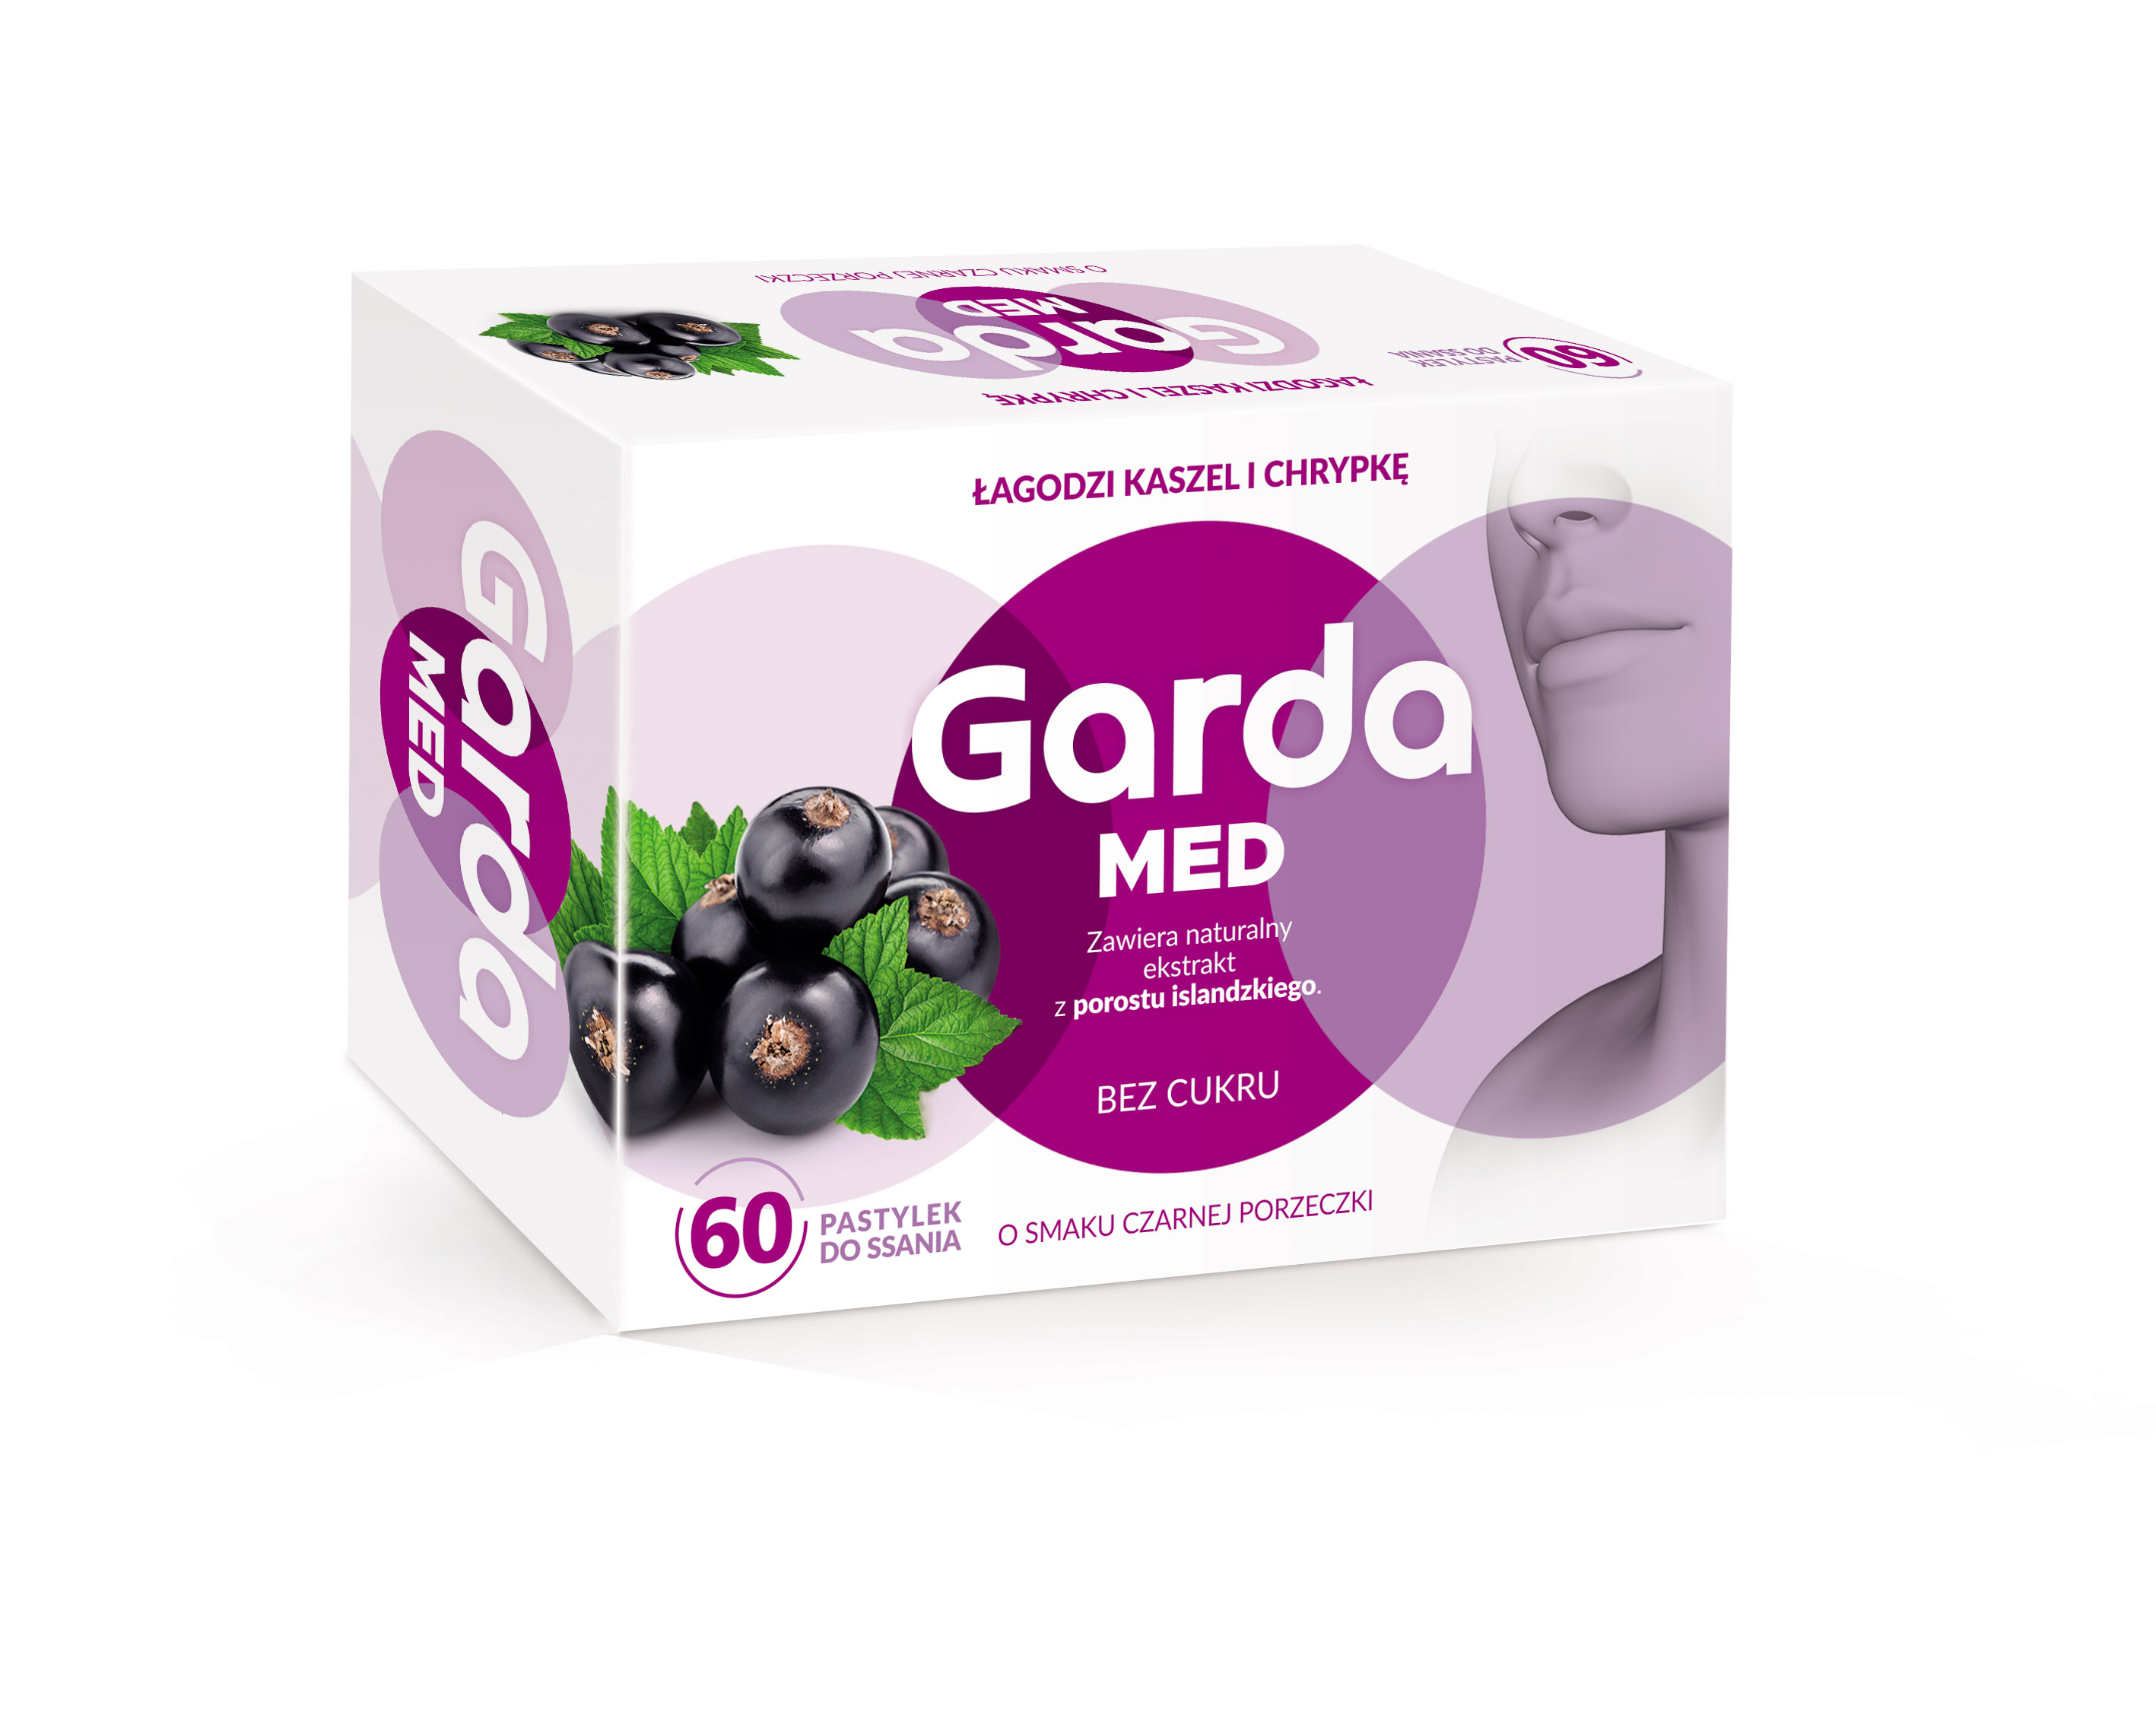 Garda_med_60_past_3D_RGB_v03.jpg